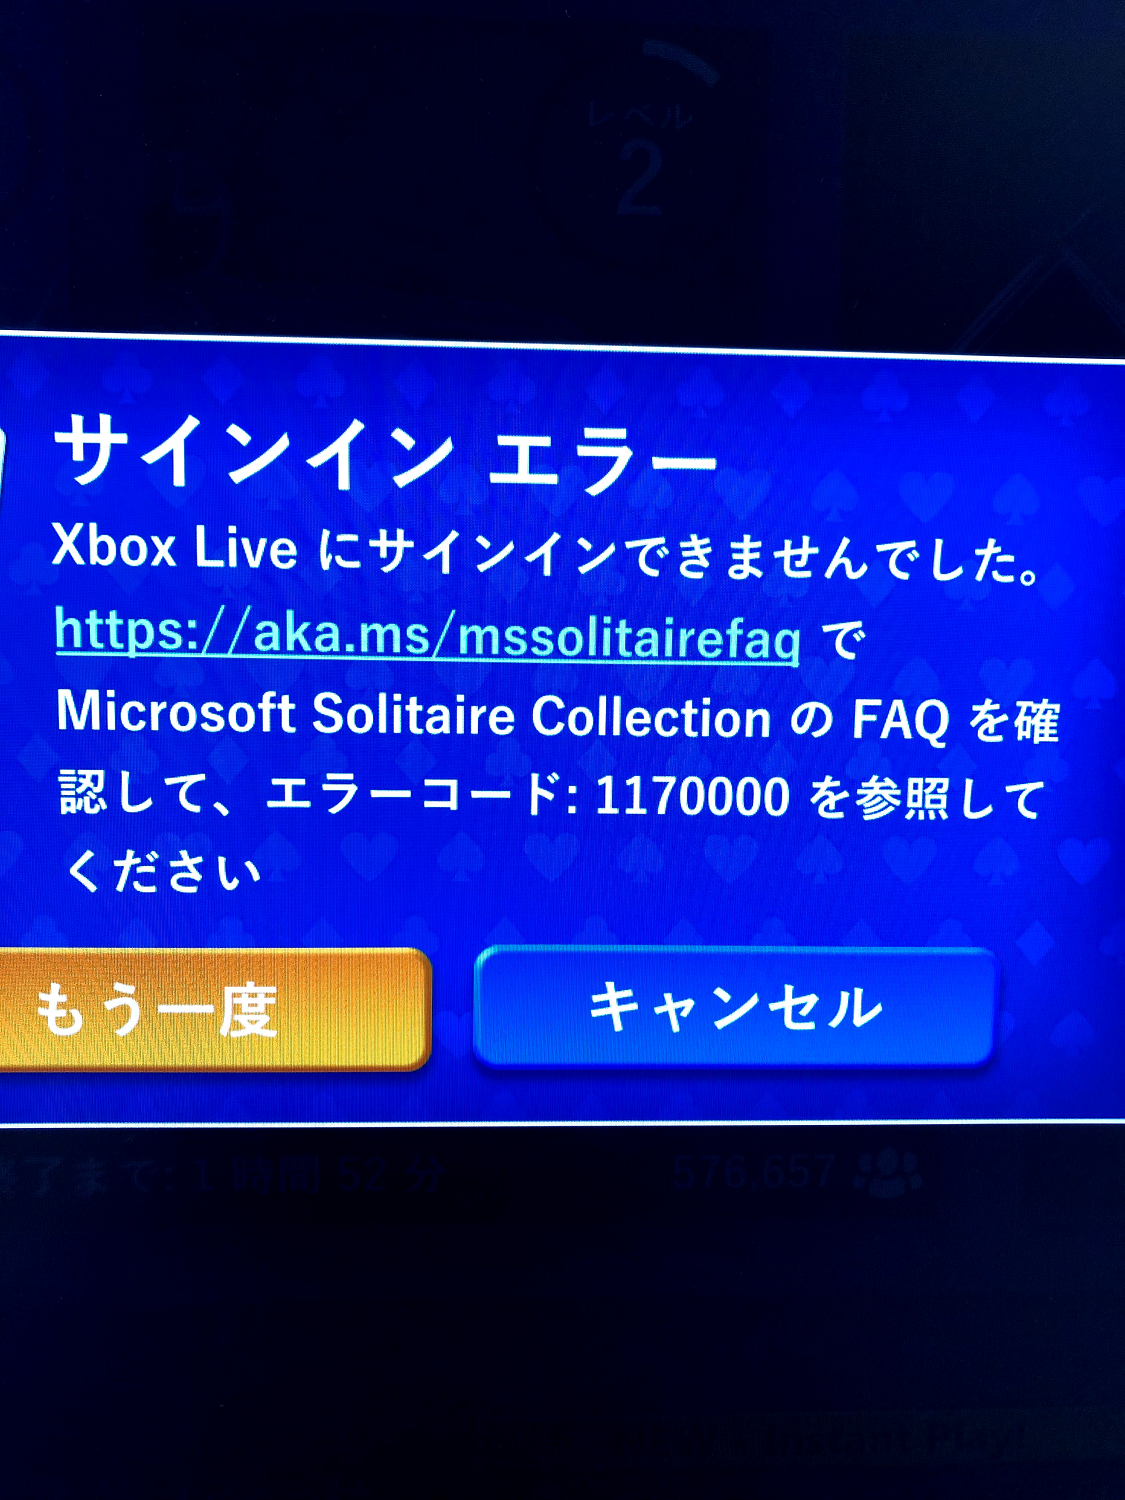 Microsoft Solitaire Collection にサインイン出来ない Microsoft コミュニティ